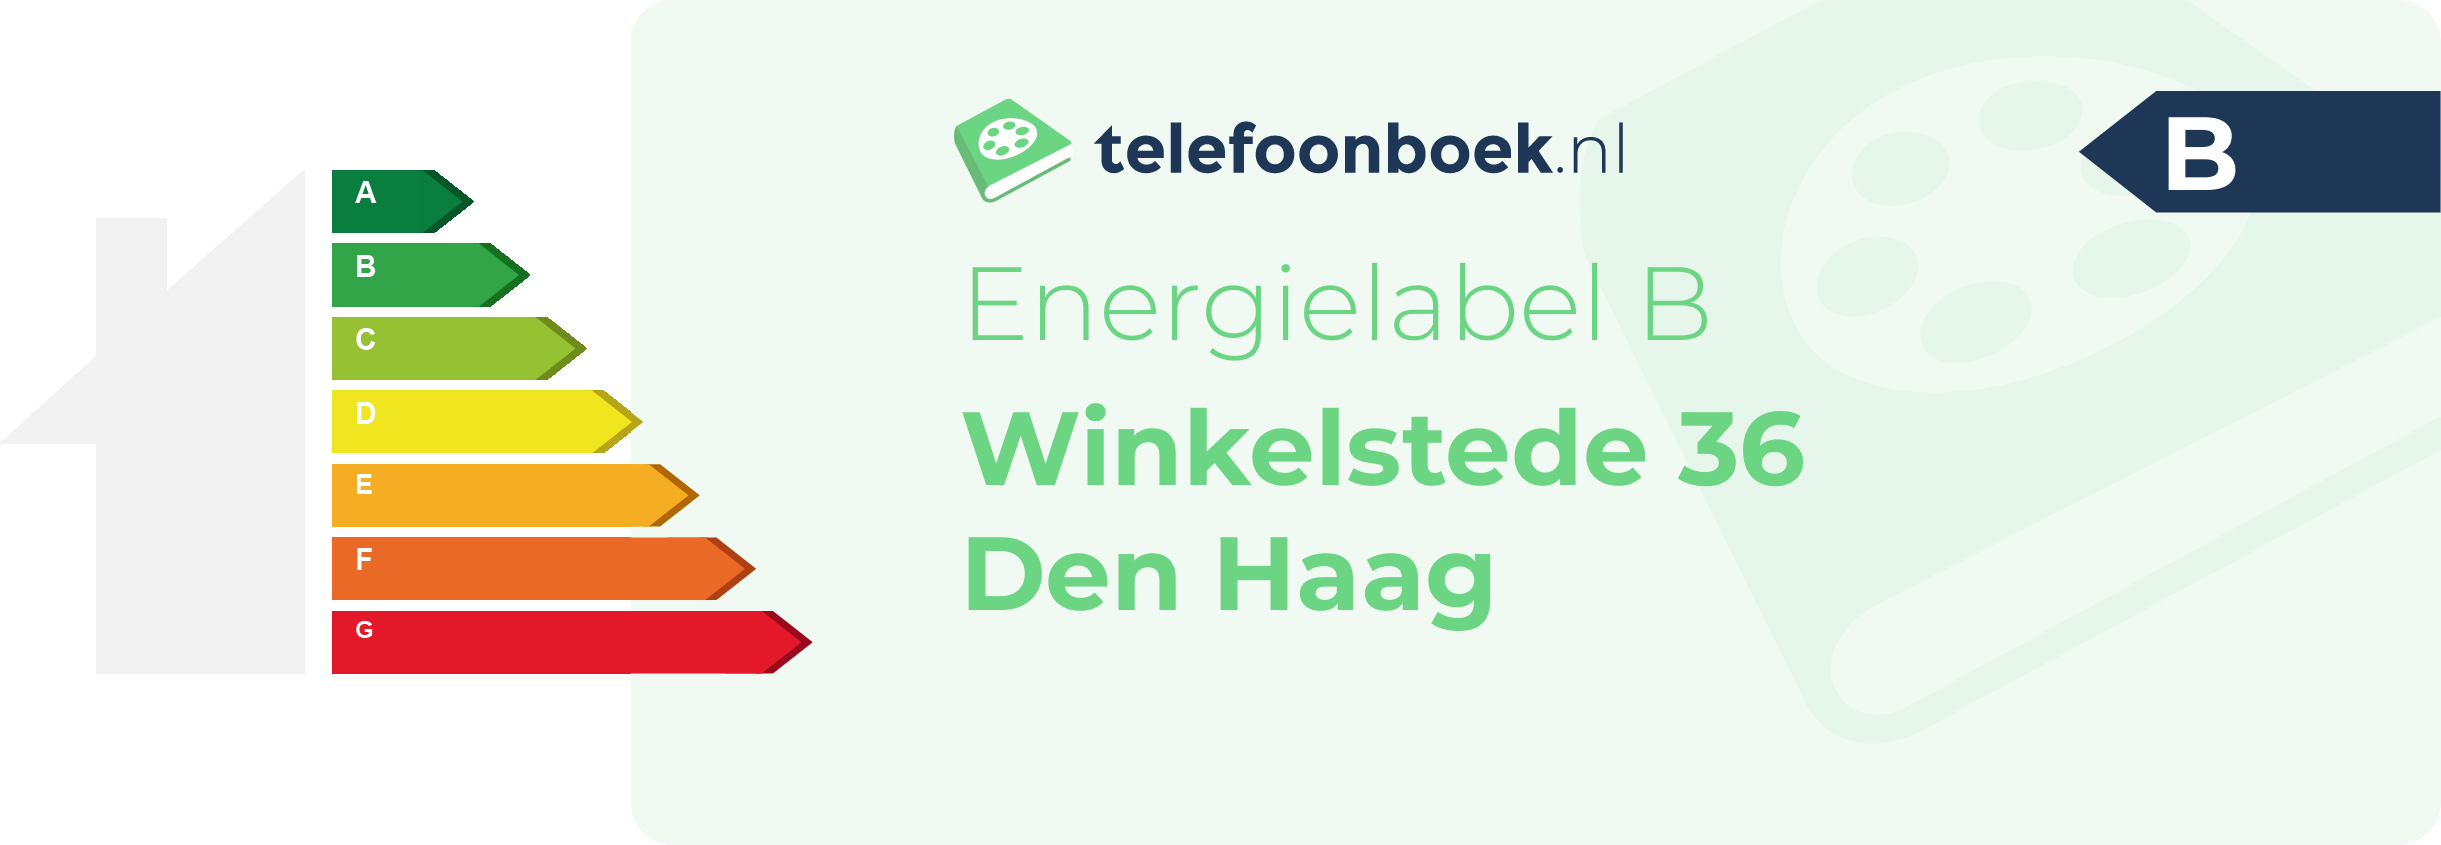 Energielabel Winkelstede 36 Den Haag